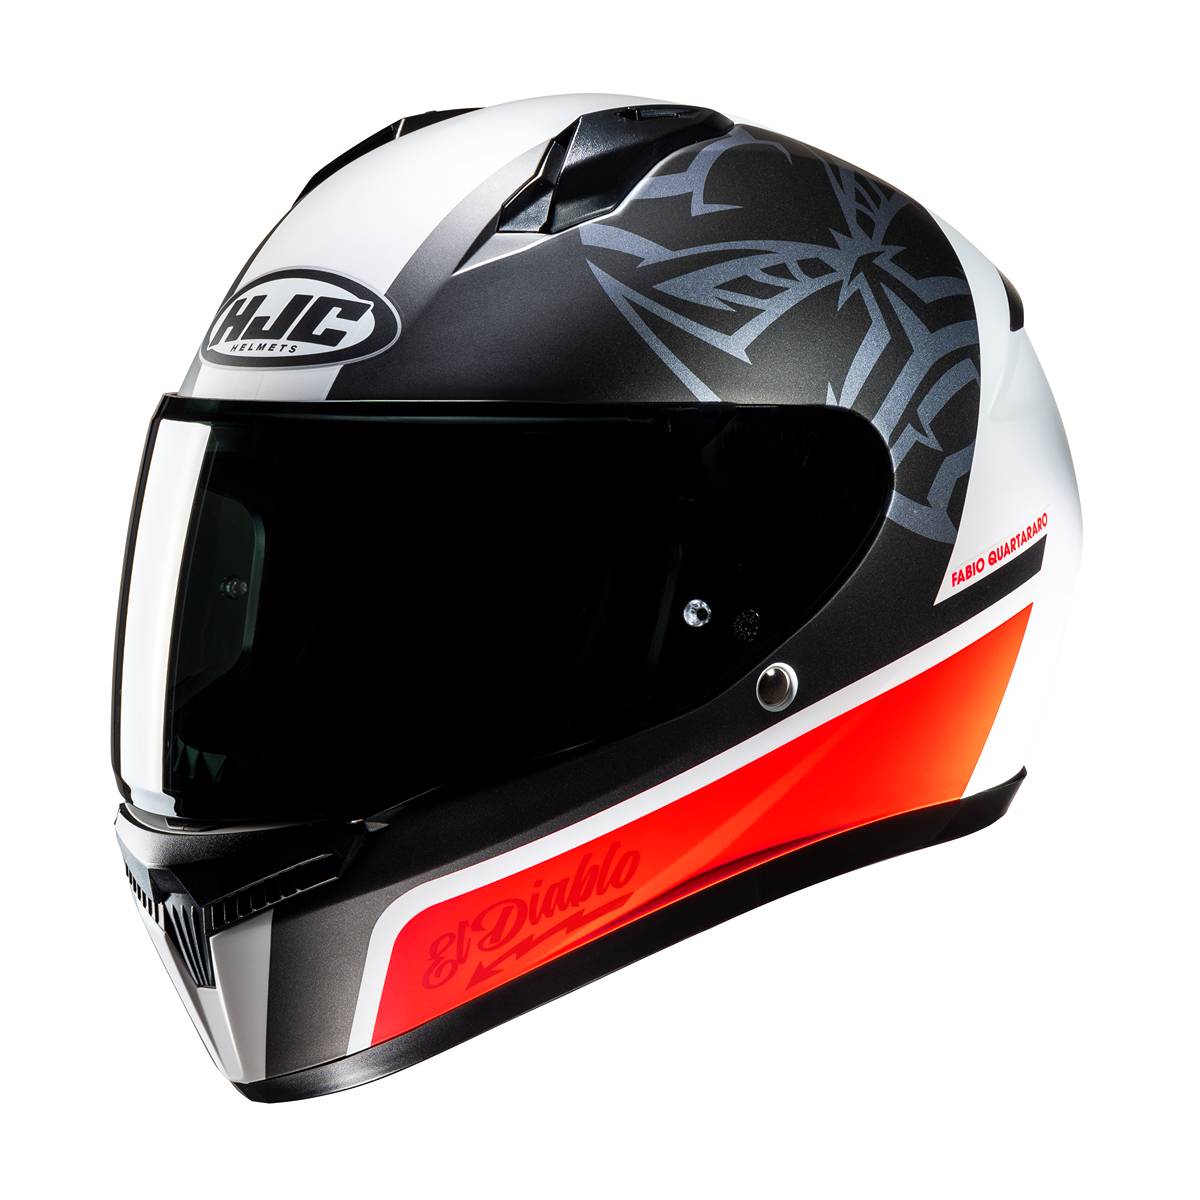 Image of HJC C10 Fabio Quartararo 20 Full Face Helmet White Red Size 2XL ID 8804269437254